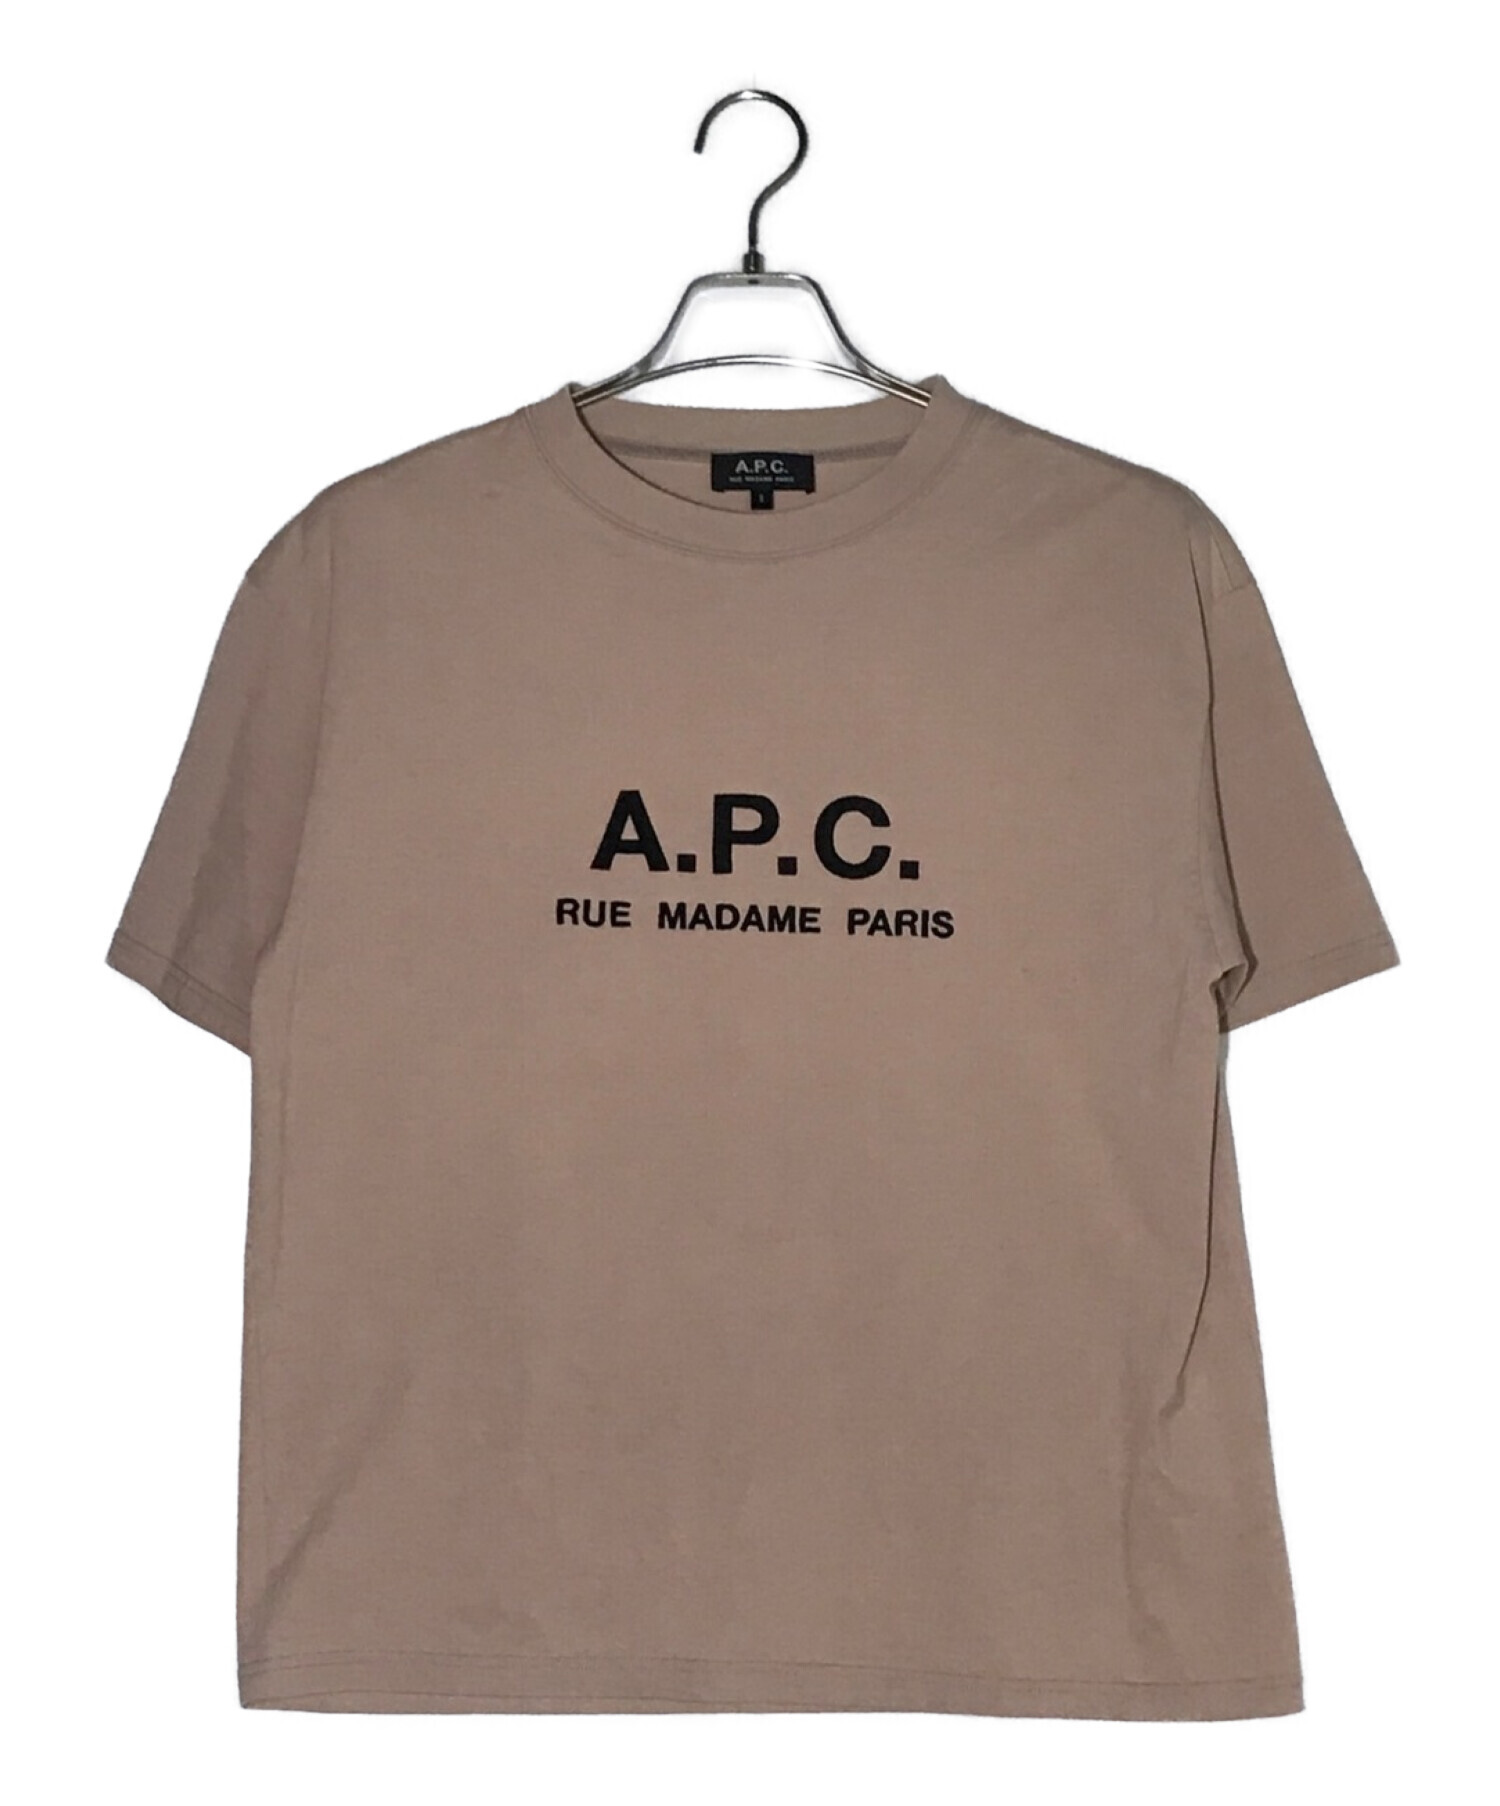 A.P.C. (アーペーセー) 刺繍ロゴTシャツ ベージュ サイズ:S